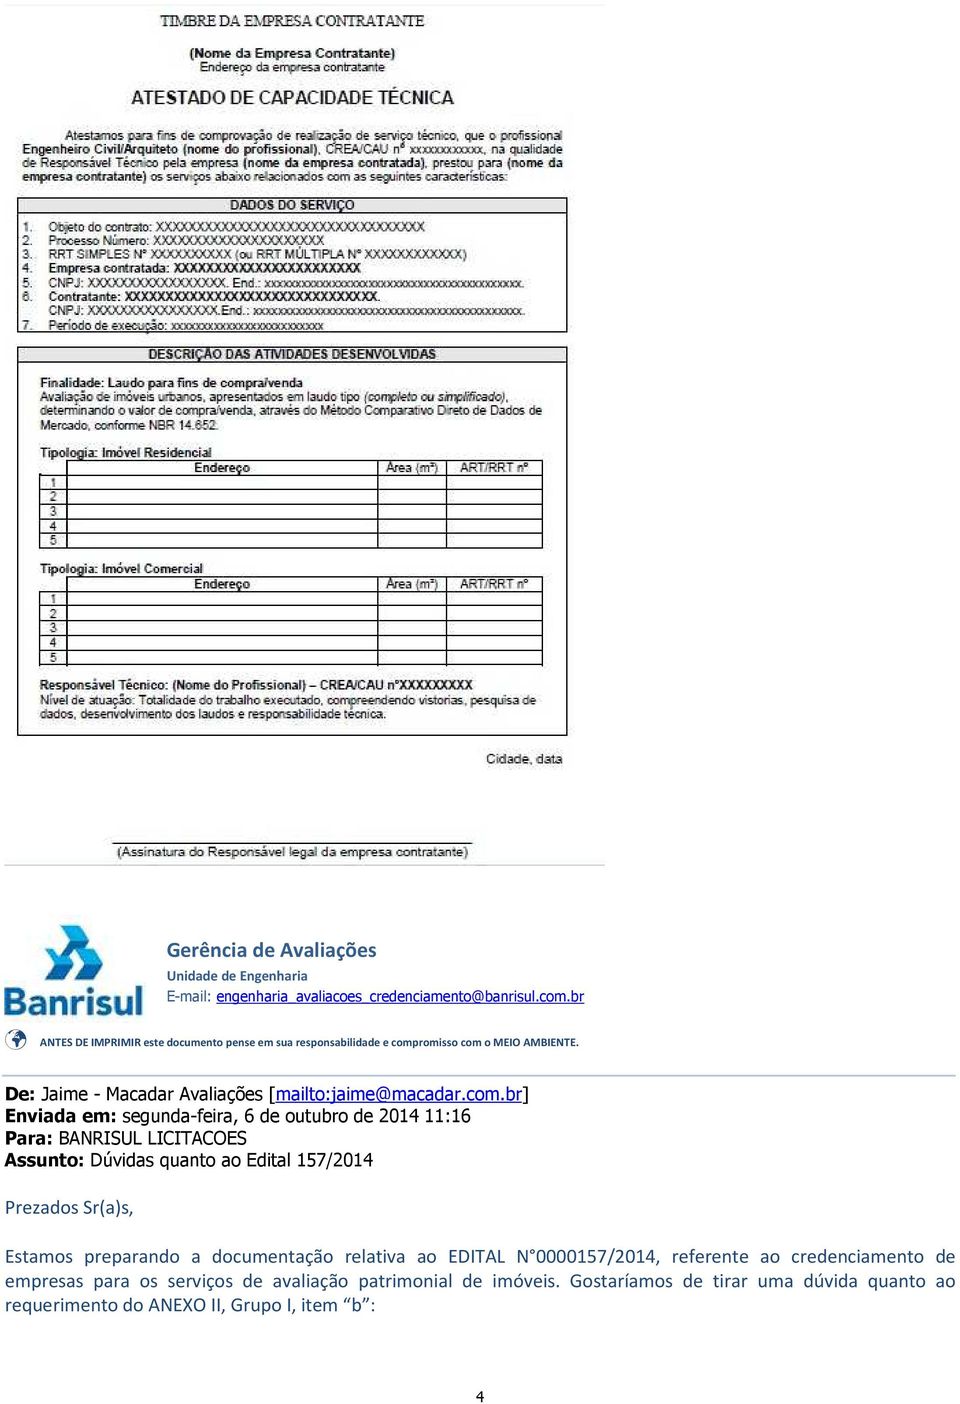 0000157/2014, referente ao credenciamento de empresas para os serviços de avaliação